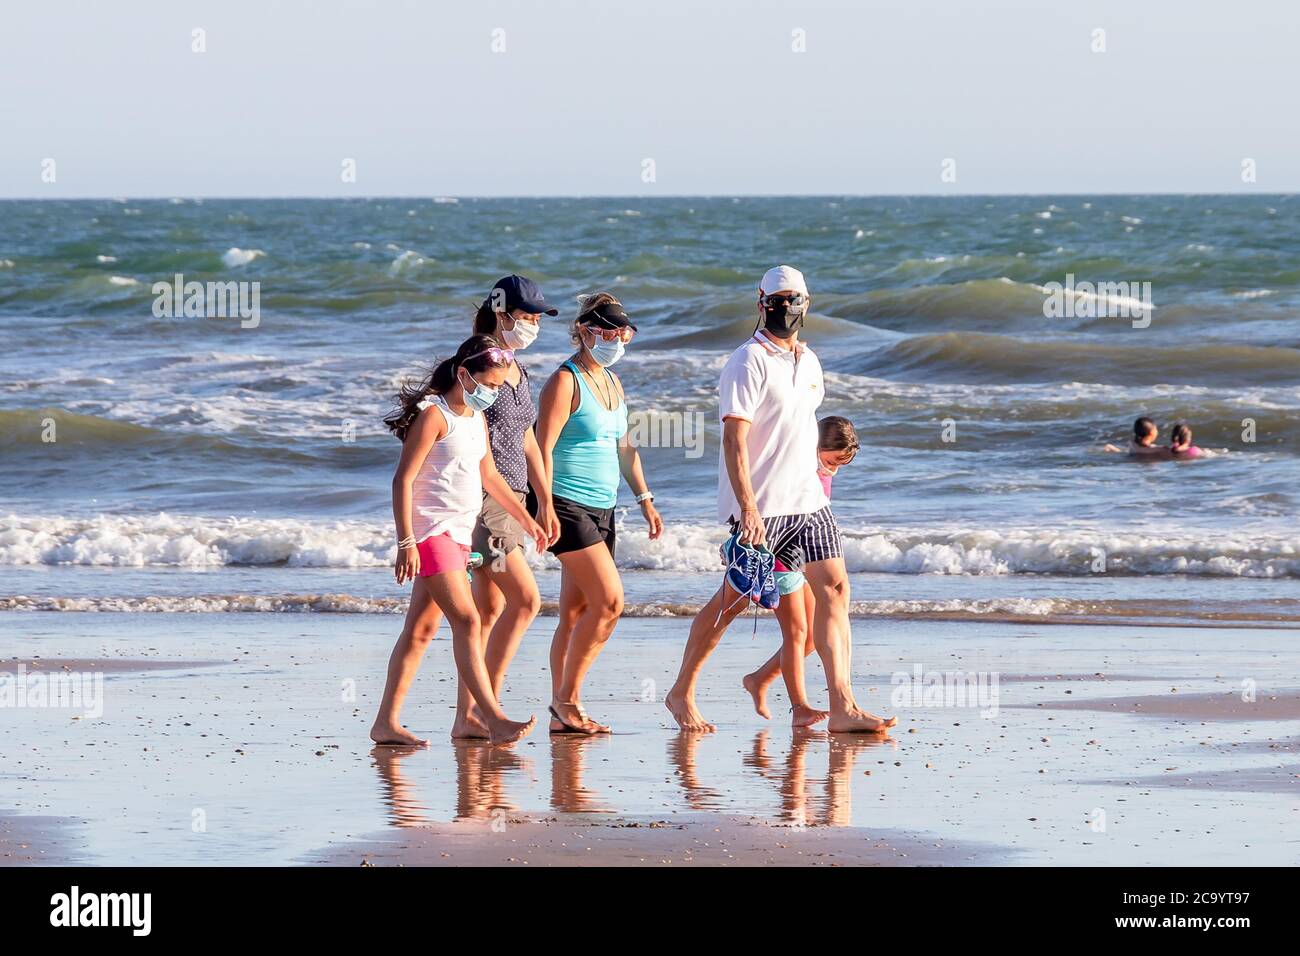 Punta Umbria, Huelva, Espagne - 2 août 2020 : une famille marchant sur la plage avec des masques protecteurs ou médicaux. Nouvelle normale en Espagne avec social Banque D'Images